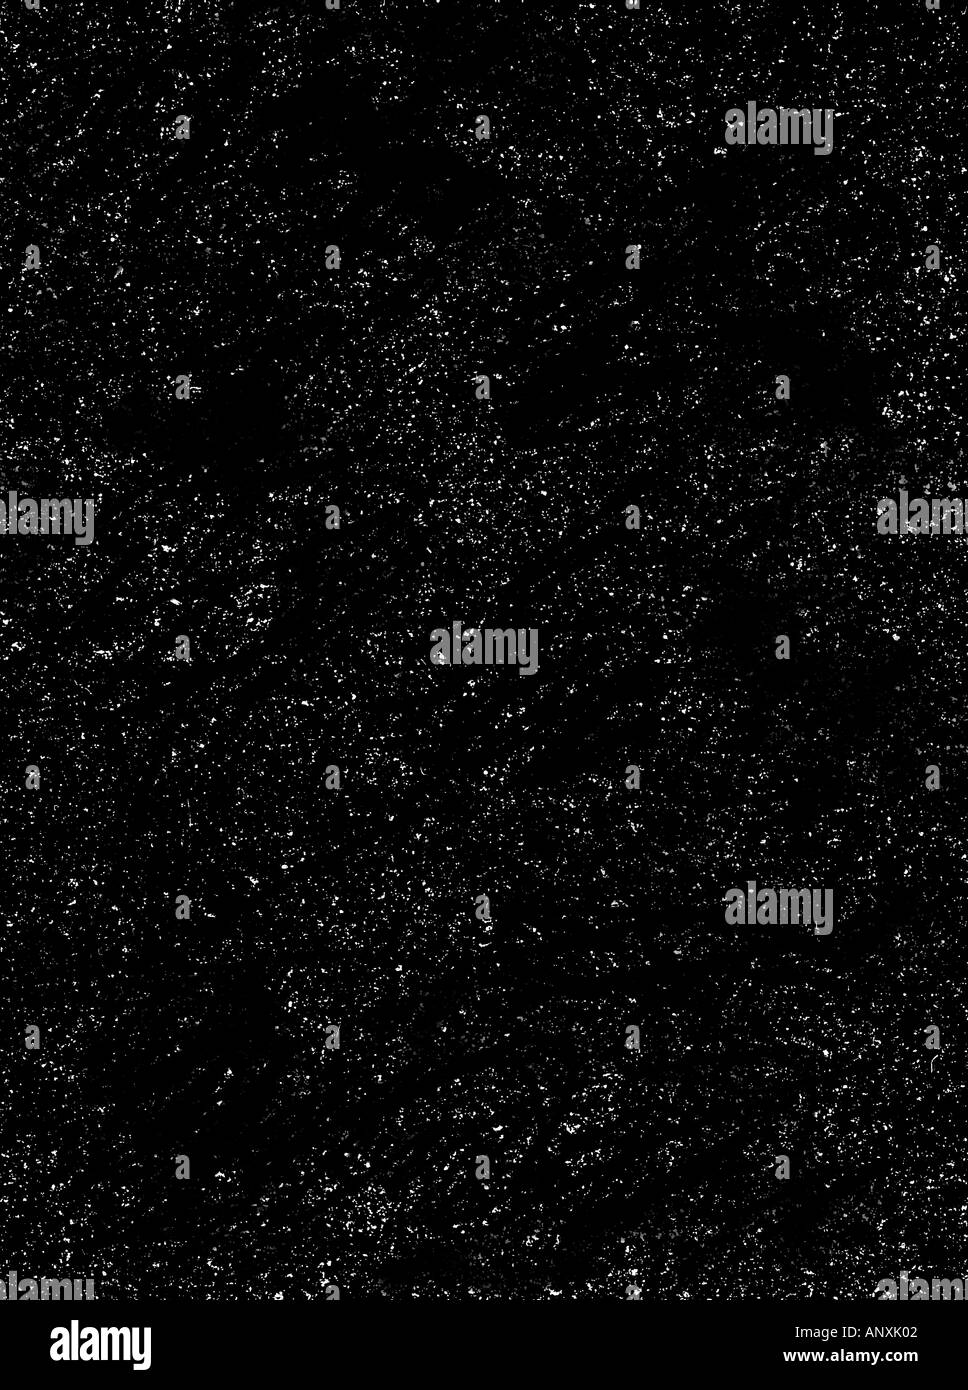 Raum Kosmos Foto Darstellung Planeten Mond und Sterne Illustration Grafik Planeten Weltraum Kosmos Sterne Sonnen Universum Stockfoto